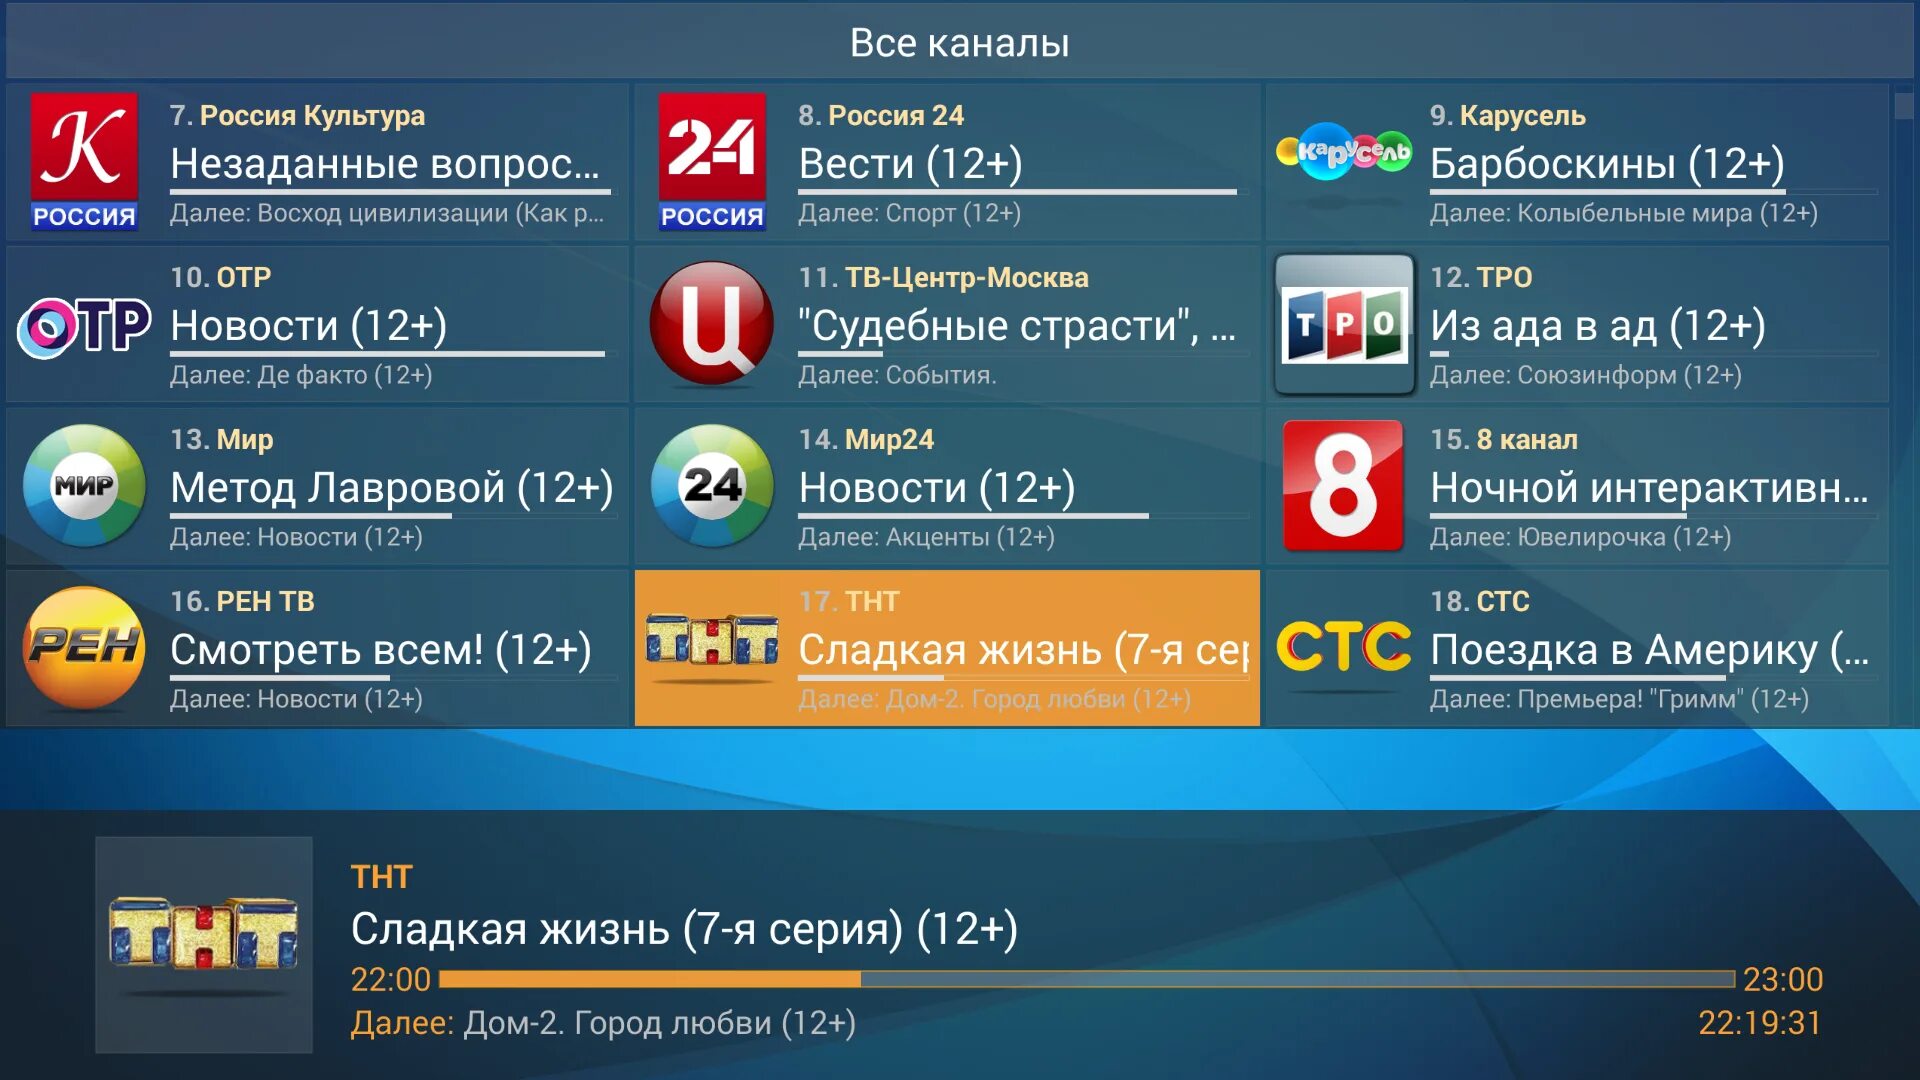 Apk приложения для телевизора. IPTV для телевизора Интерфейс. Российские Телеканалы. IPTV плеер для андроид. Программа IPTV для телевизора.